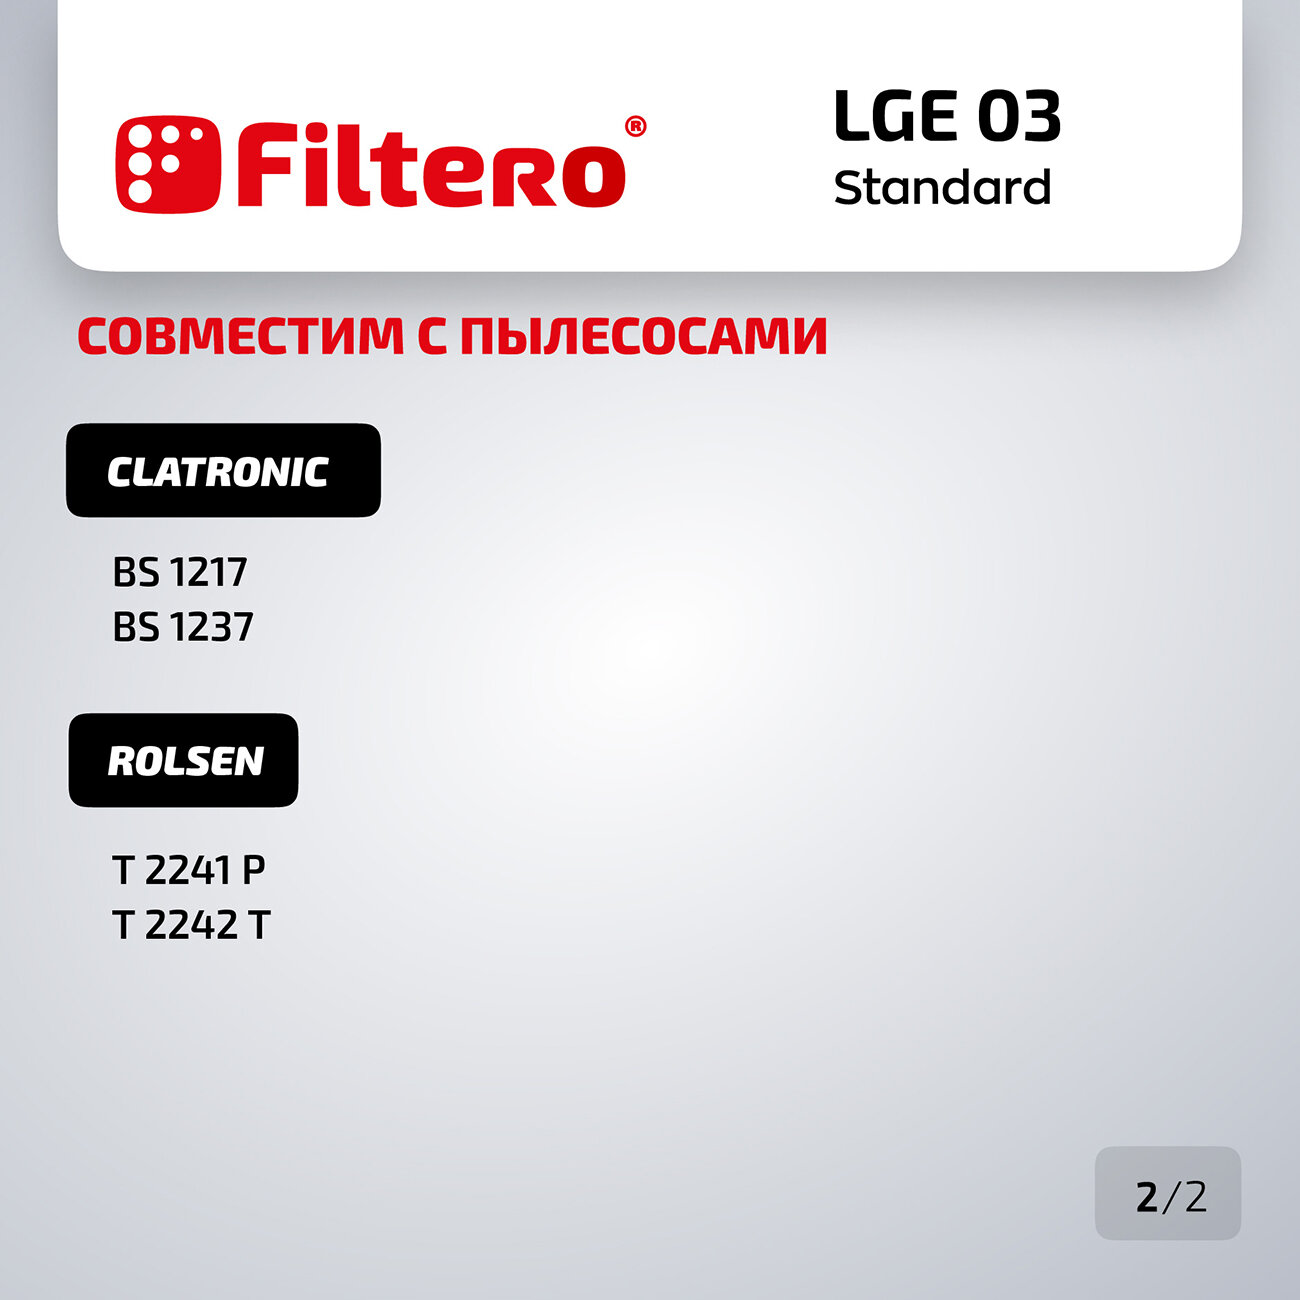 Мешки-пылесборники Filtero LGE 03 Standard для пылесосов LG, бумажные, 5 шт.